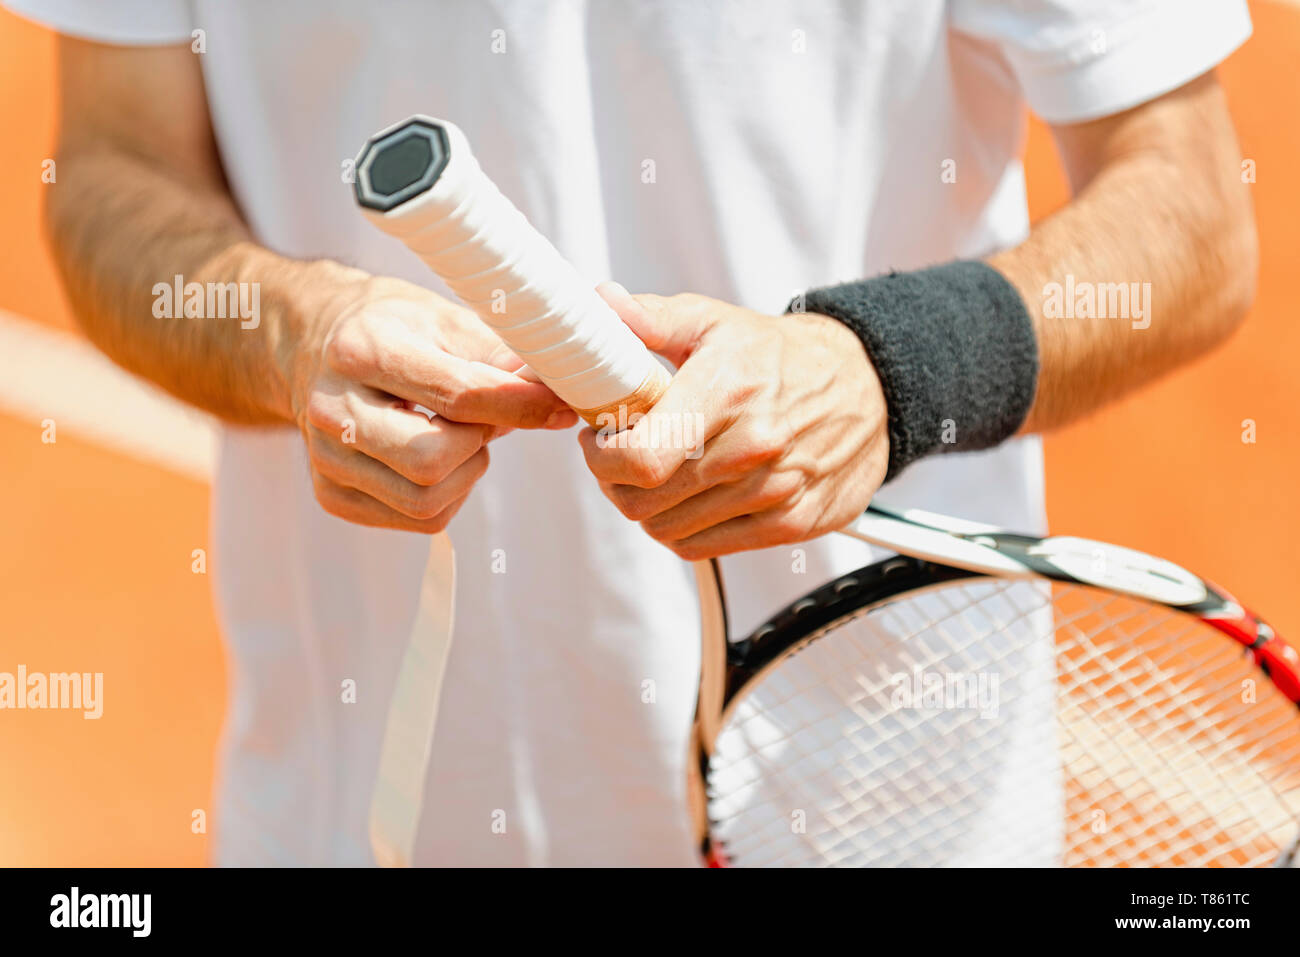 Player setzen neue Grip Tape auf Tennisschläger Stockfotografie - Alamy